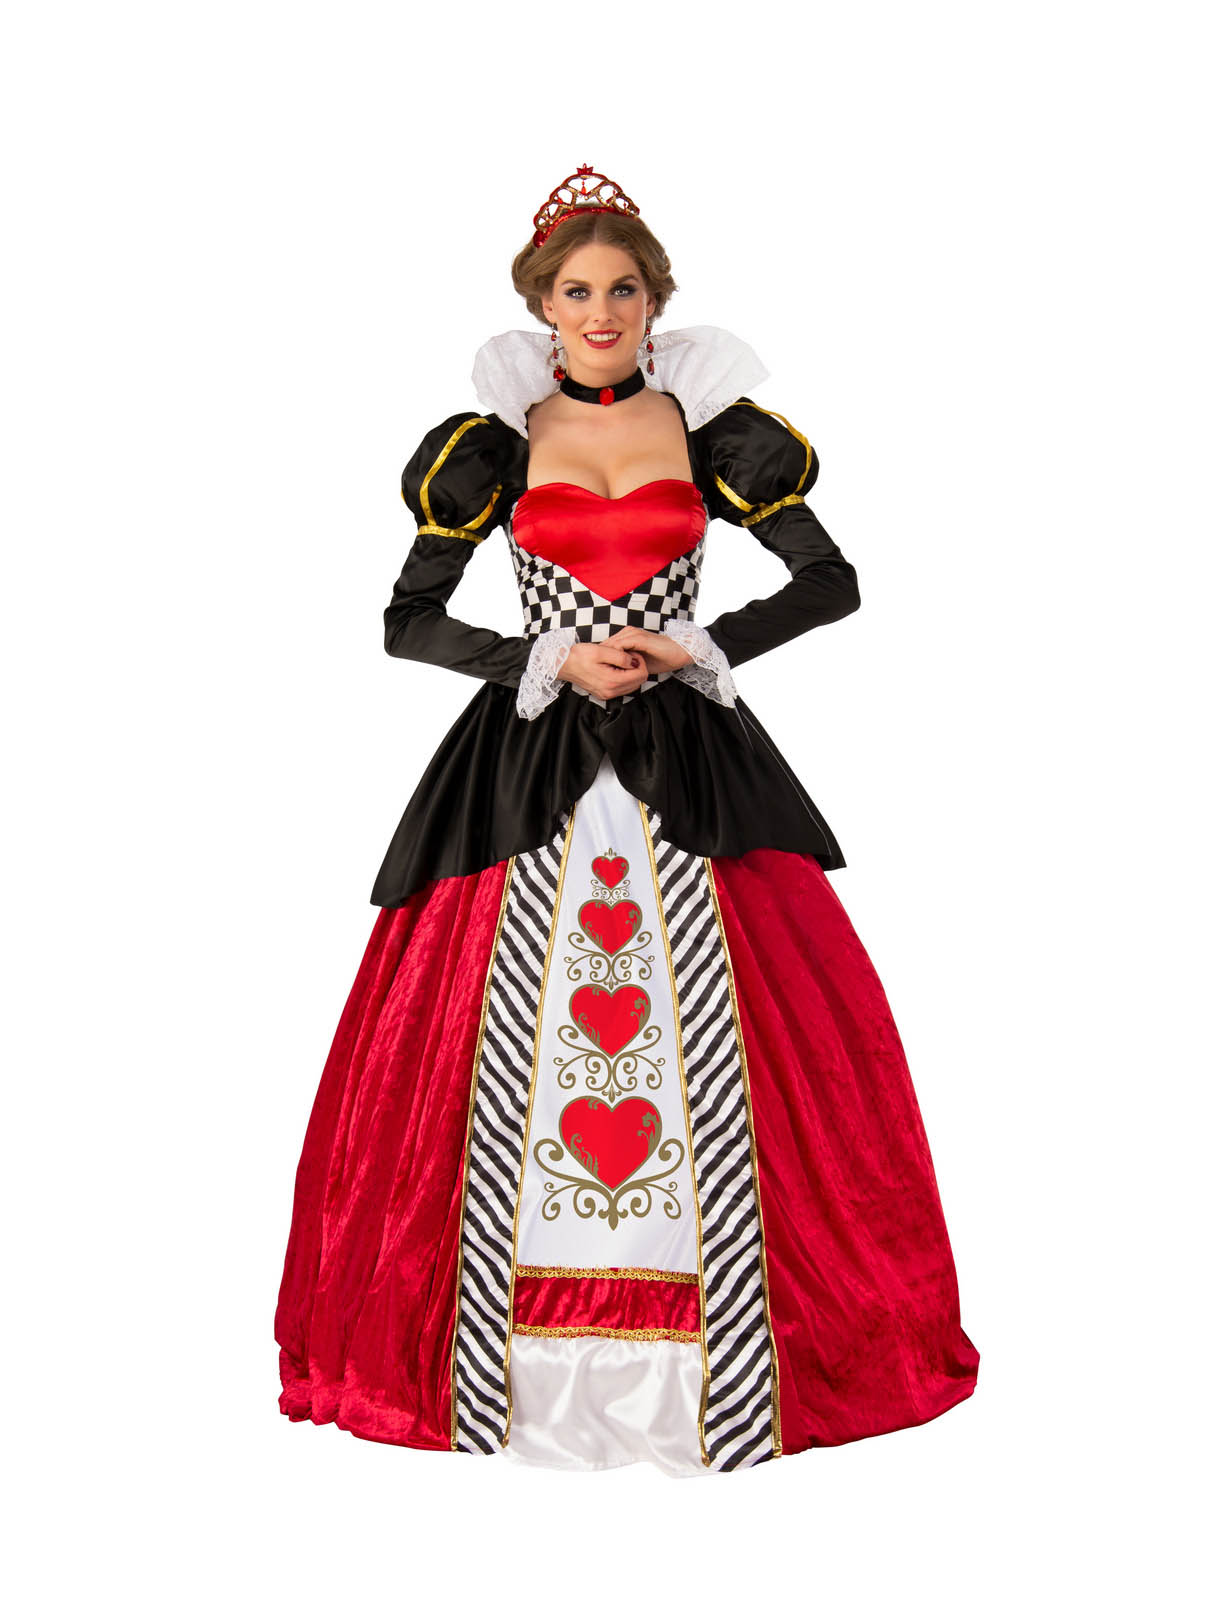 queen of hearts costume college